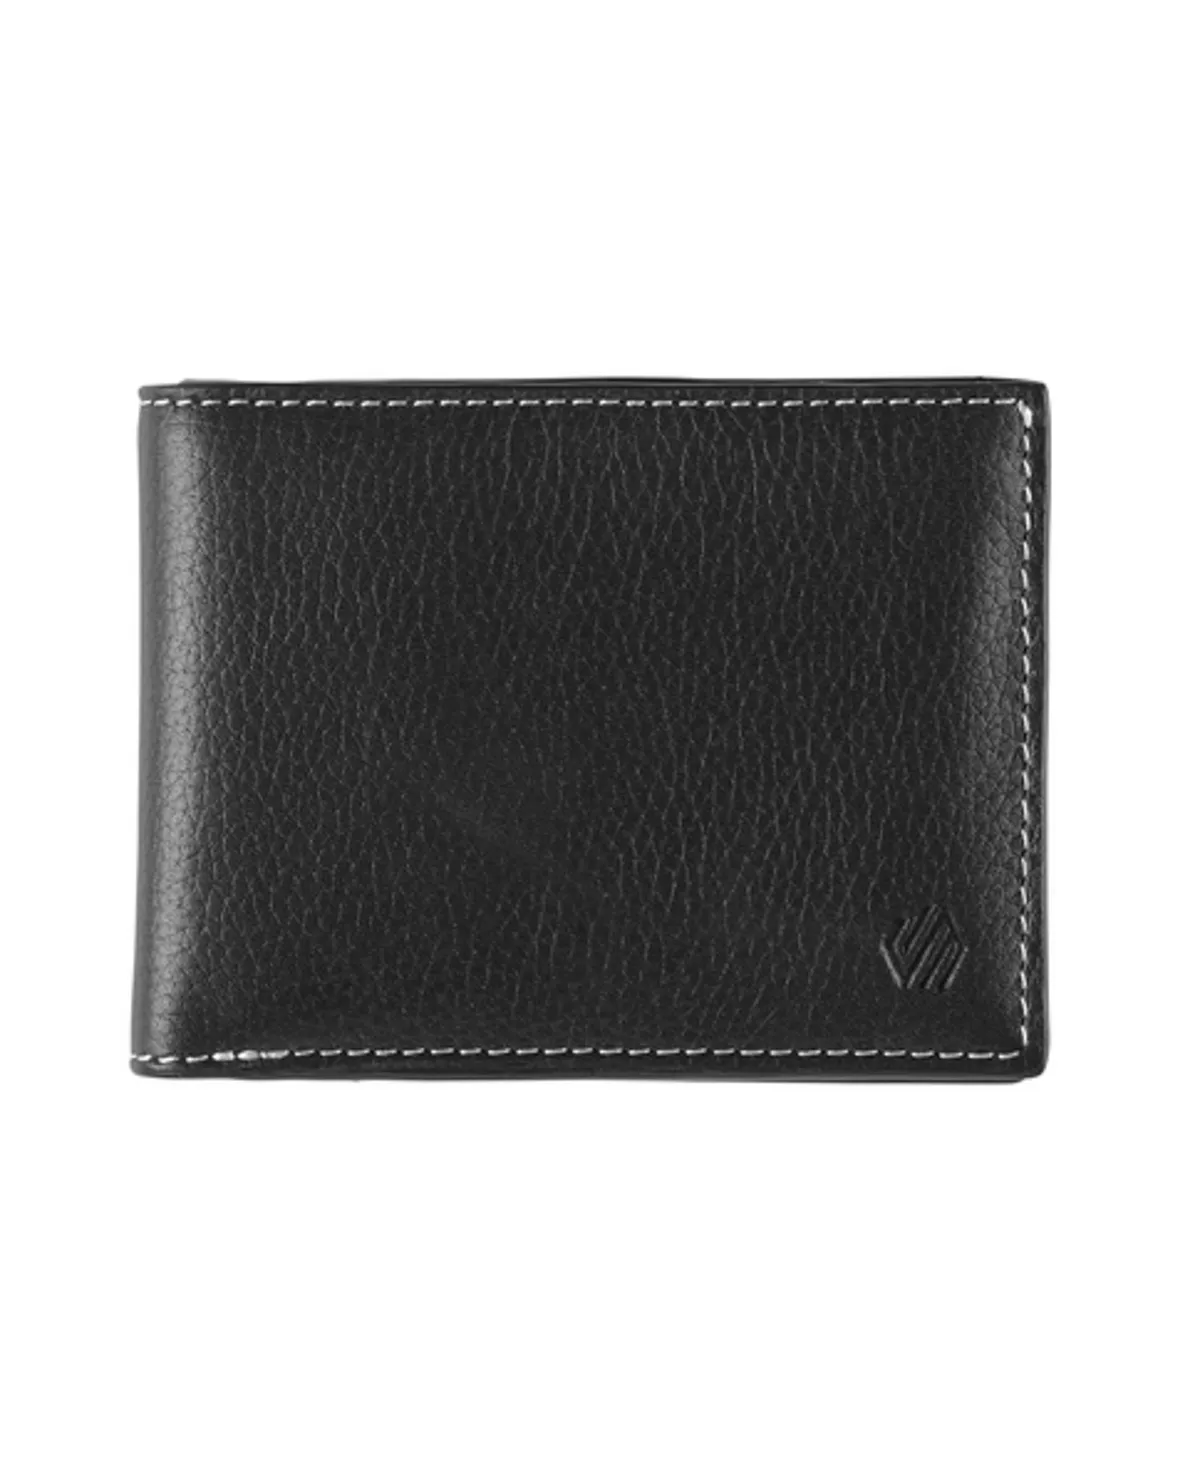 Kingston Billfold Wallet